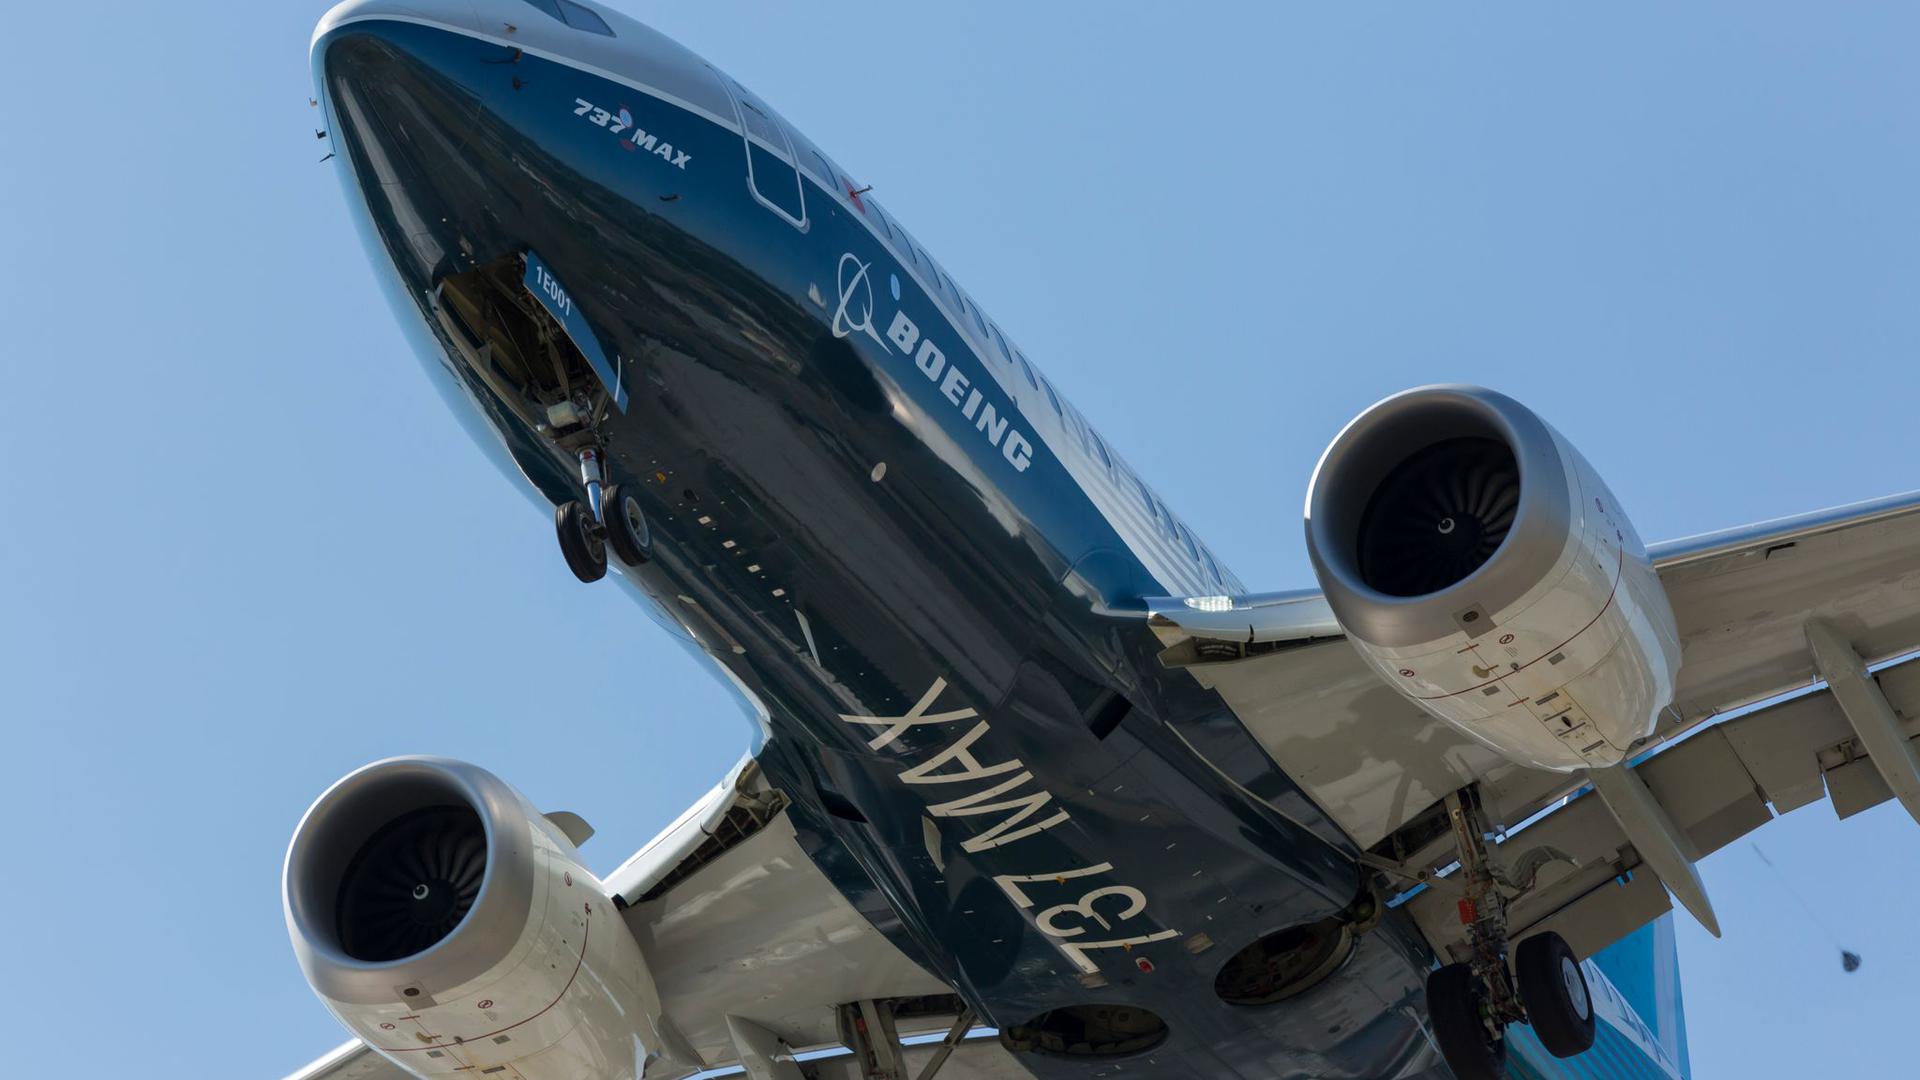 Eine Boeing 737 MAX 7. Mit dem Flugzeugmodell fing die Krise beim US-Flugzeugbauer an.